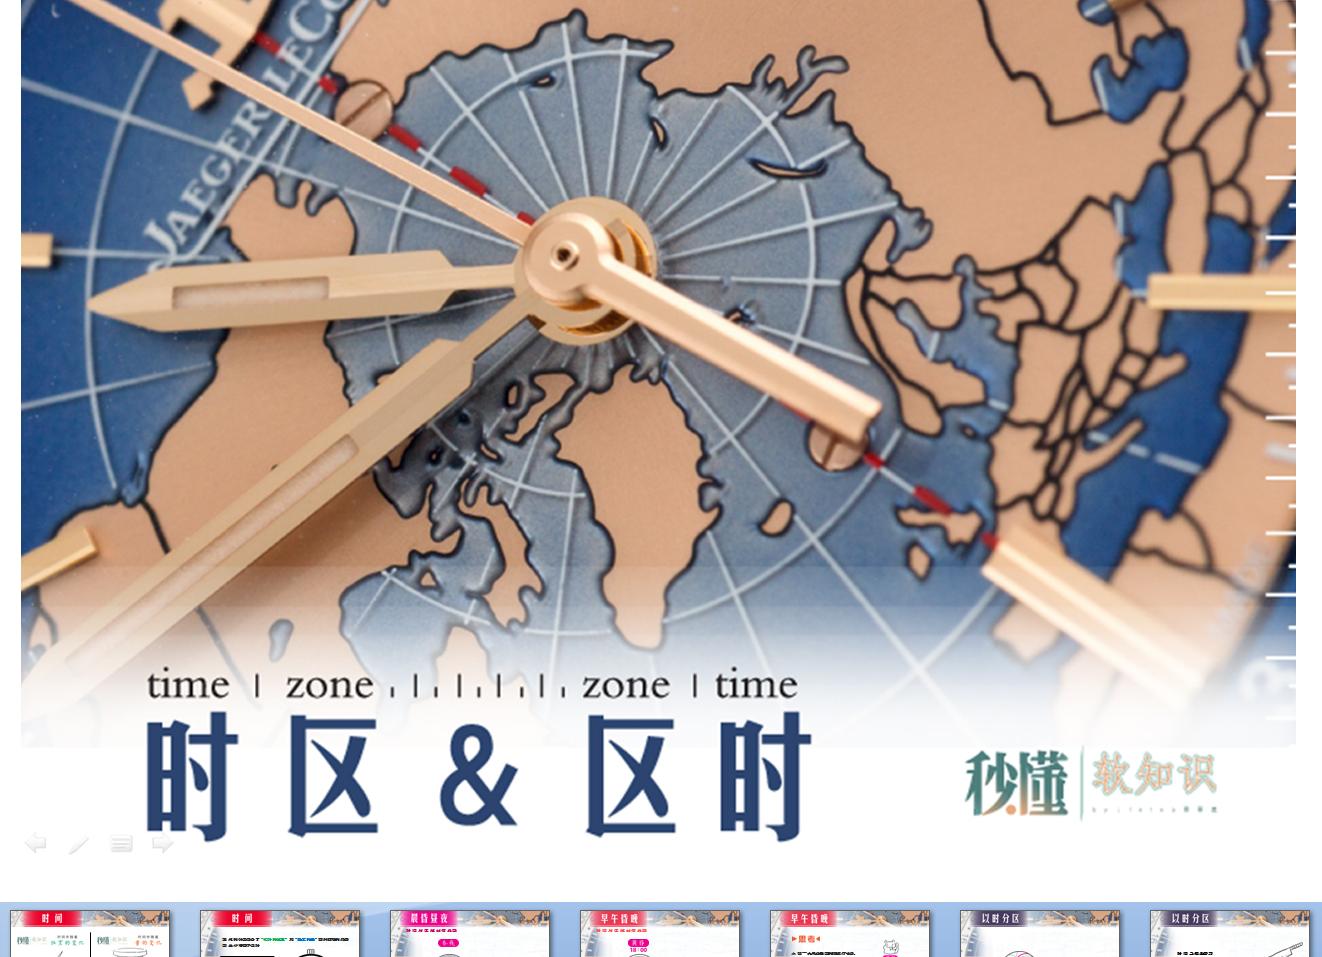 【地图】矢量世界地图（旅游卡通版）-PS素材-设计e周素材库